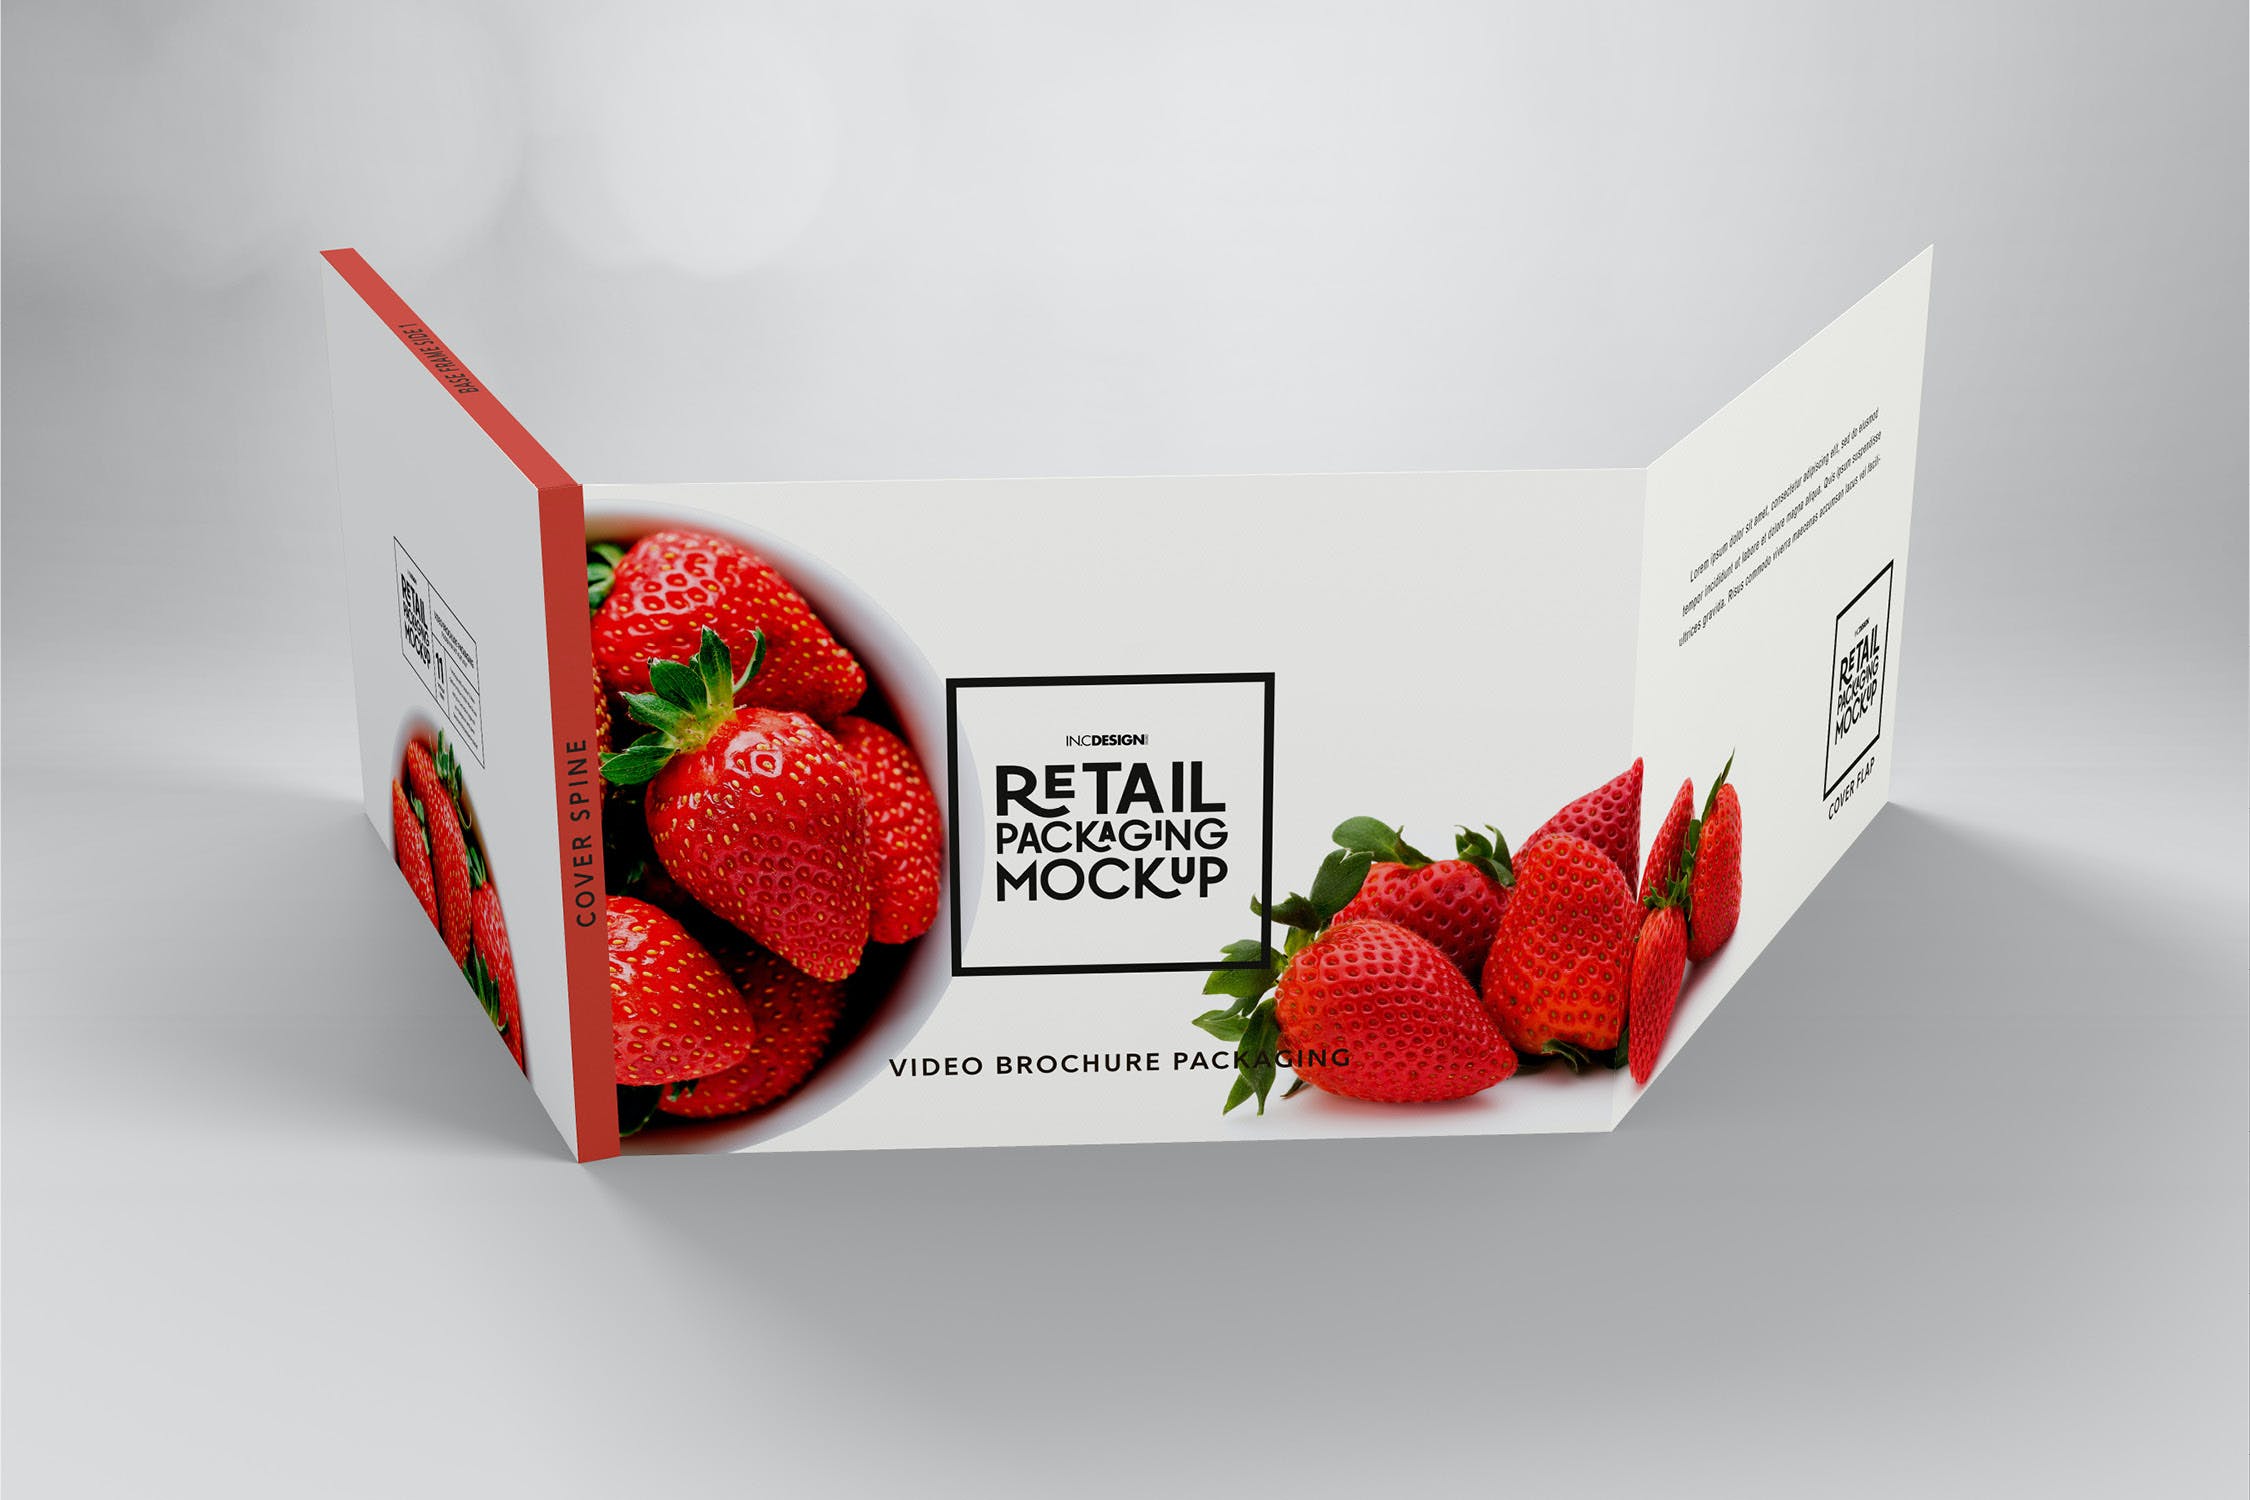 包装设计零售光盘包装手册样机 Retail Video Wrap Brochure Packaging Mockup设计素材模板